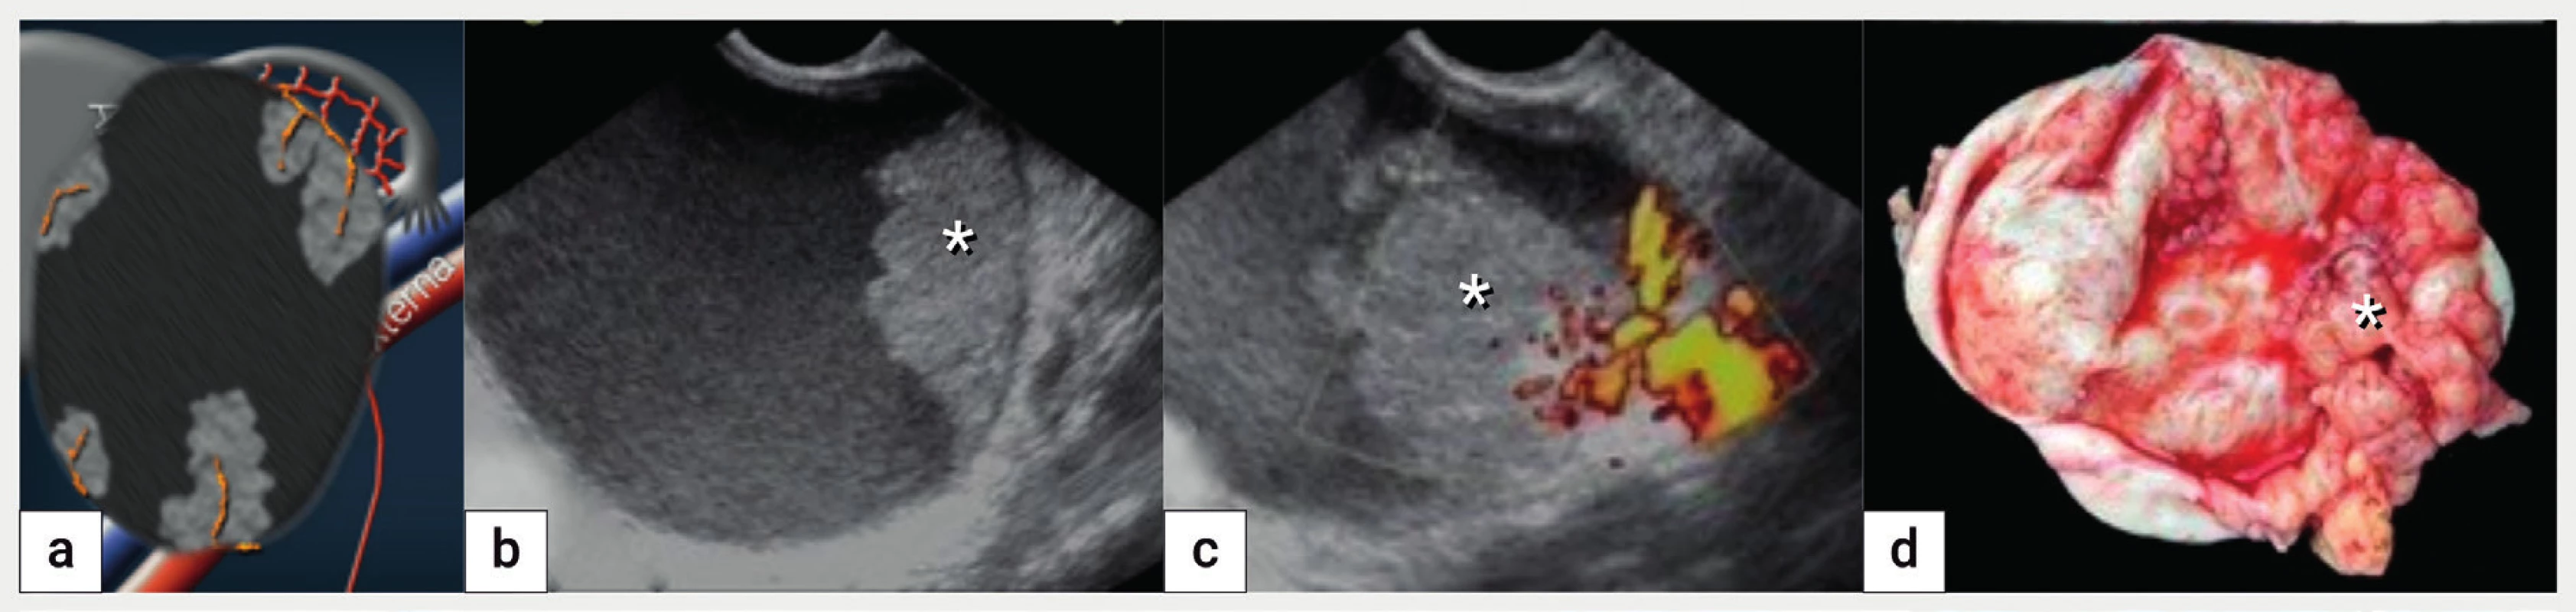 Maligní transformace endometroidní cysty<br>
Schéma unilokulární-solidní cysty s tekutinou vzhledu mléčného skla a vícečetnými solidními papilárními prominencemi s bohatou perfuzí (a),
ultrazvukové zobrazení v B-obraze (b), dopplerovské zobrazení perfuze uvnitř solidní papilární intracystické prominence (c), intraoperační nález
malignizace endometroidní cysty (podle histologie endometroidní adenokarcinom). Papilární intracystická prominence je označena hvězdičkou.